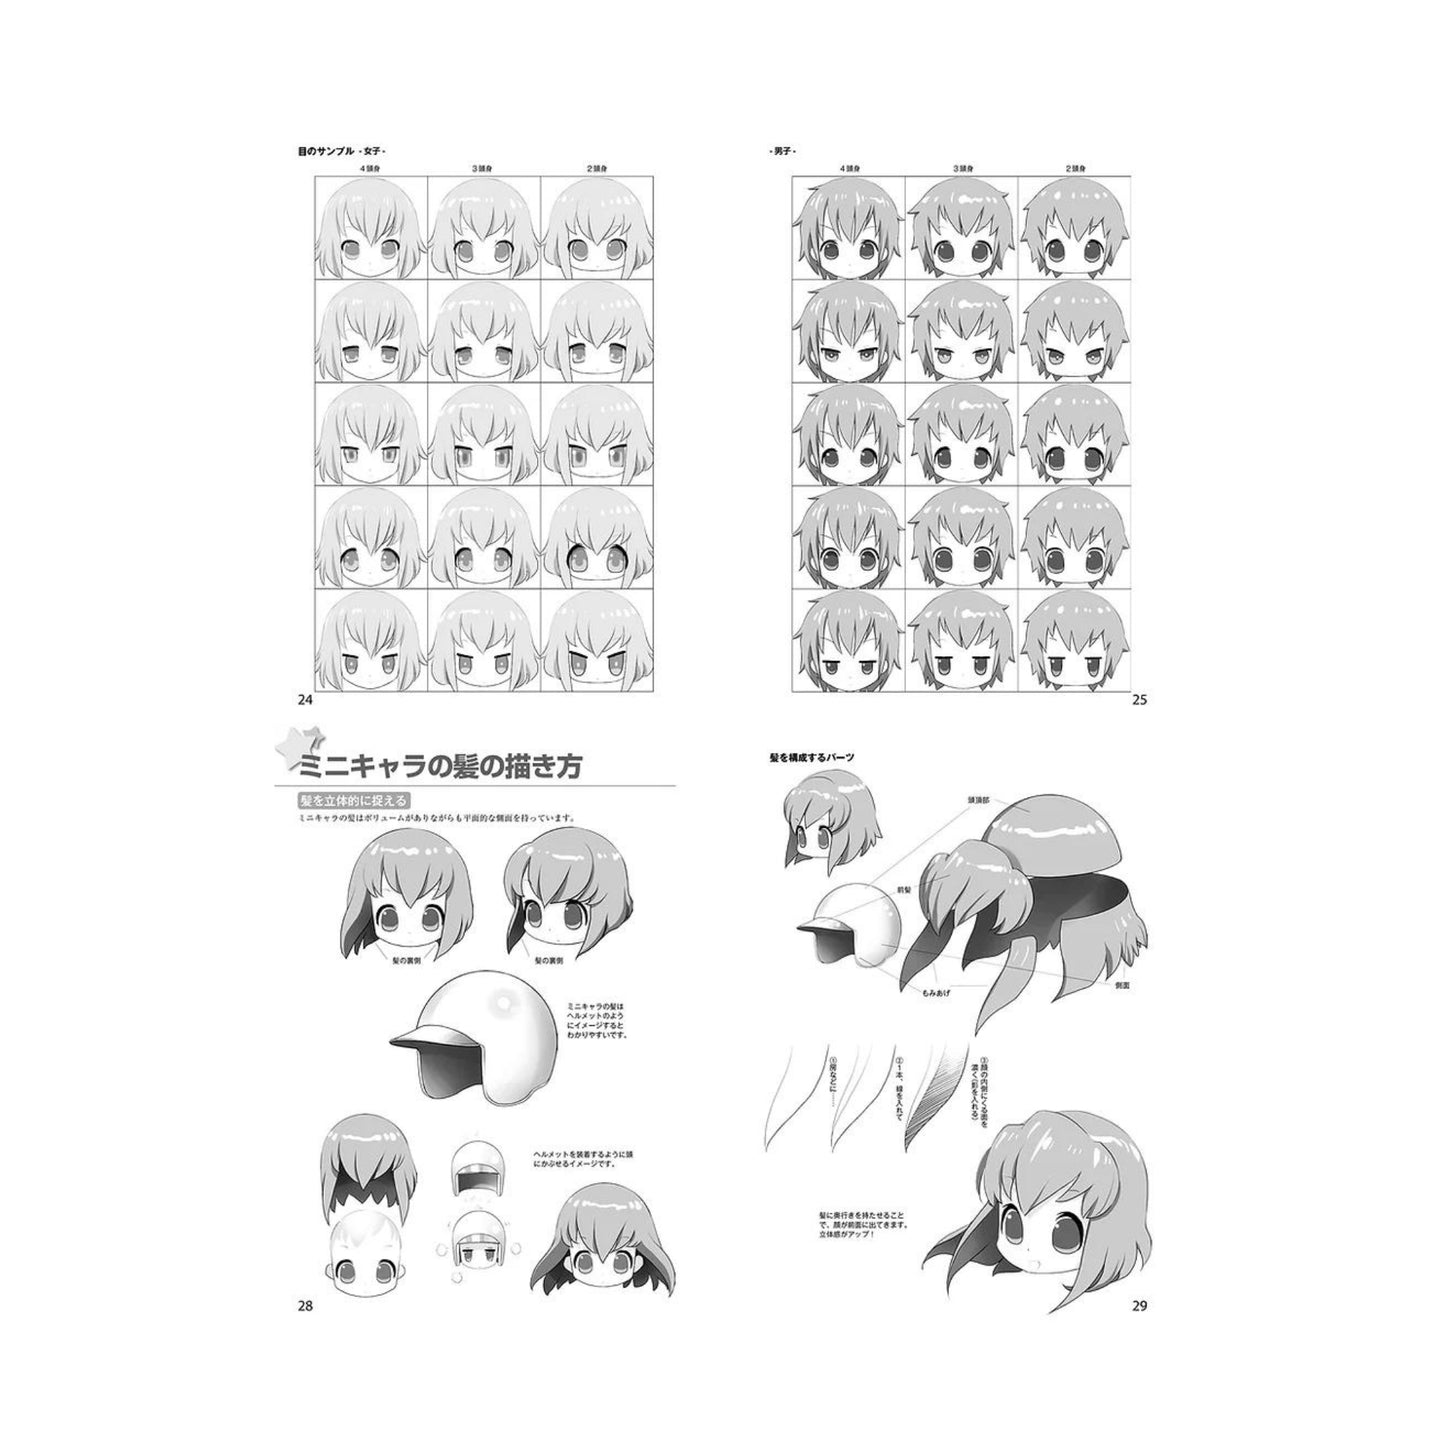 How to draw - jap. Zeichenbuch -  Chibi Moe Charas: Gesicht & Körper